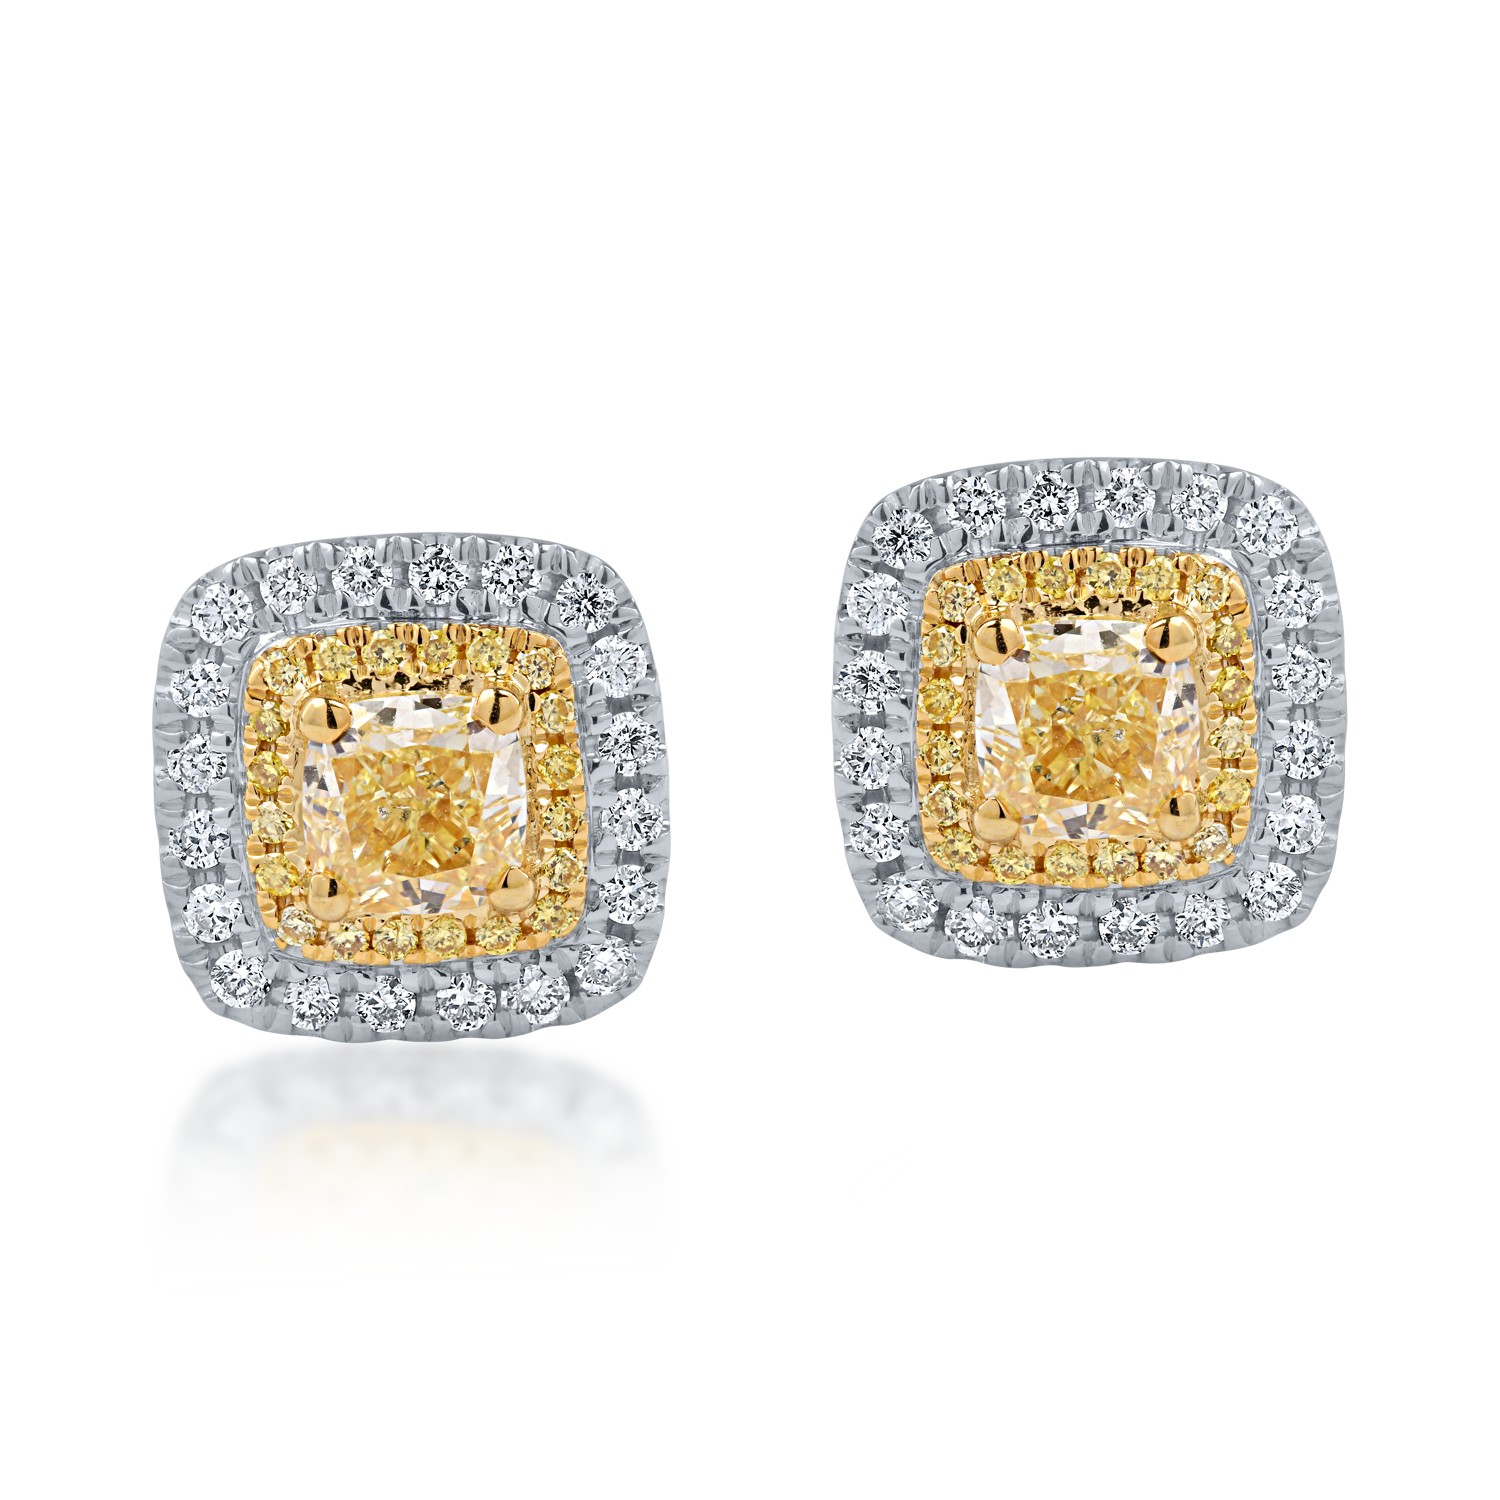 Kolczyki z biało-żółtego złota z żółtymi diamentami o masie 1.13ct i przezroczystymi diamentami o masie 0.26ct